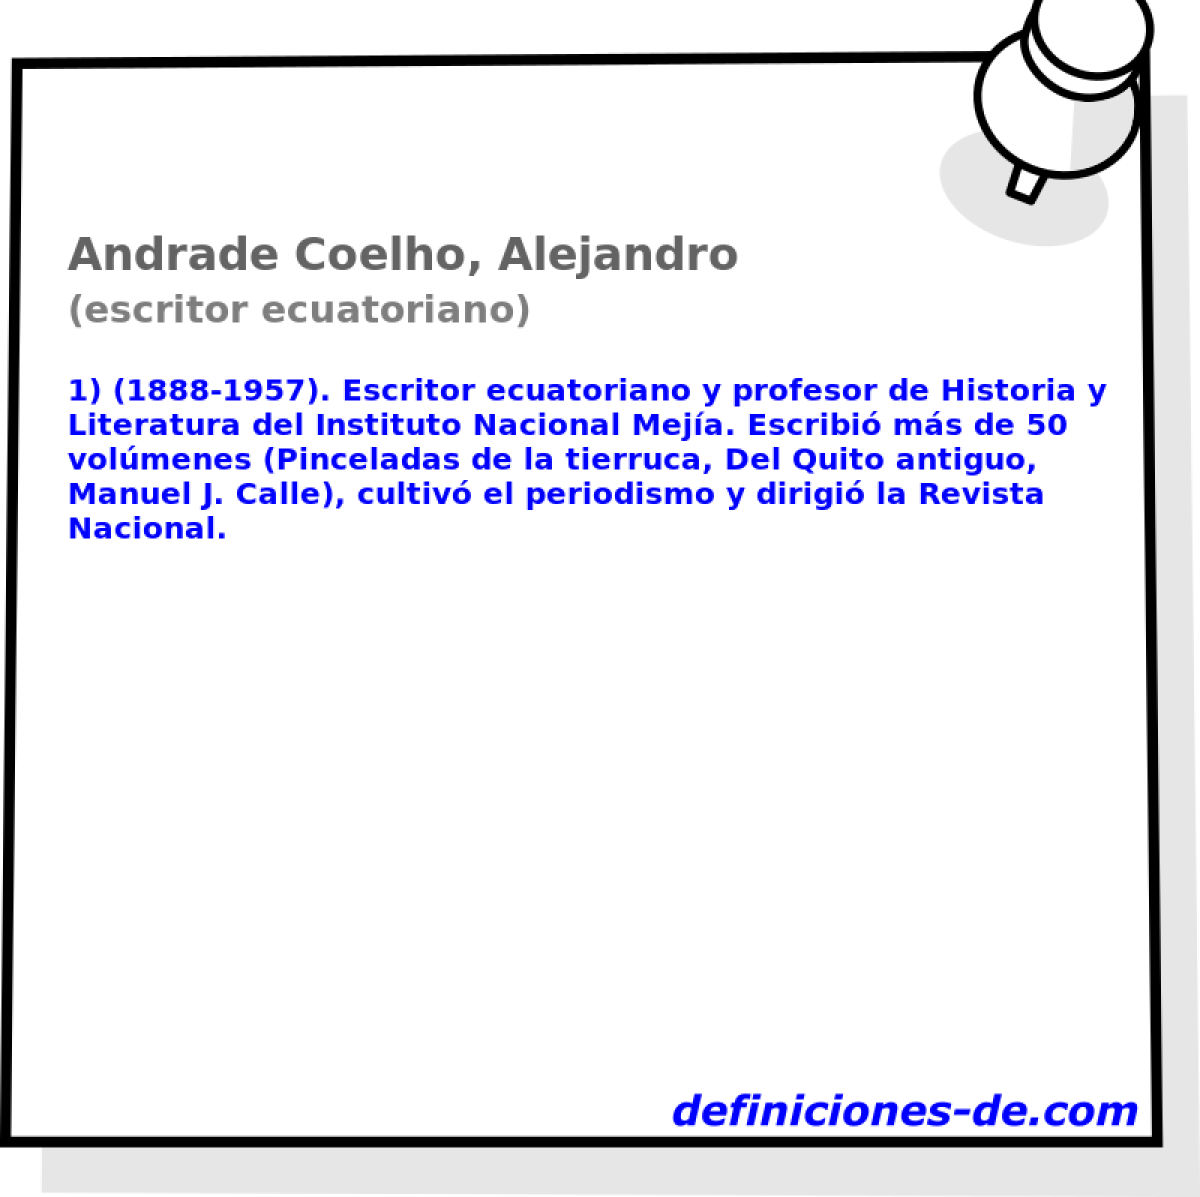 Andrade Coelho, Alejandro (escritor ecuatoriano)